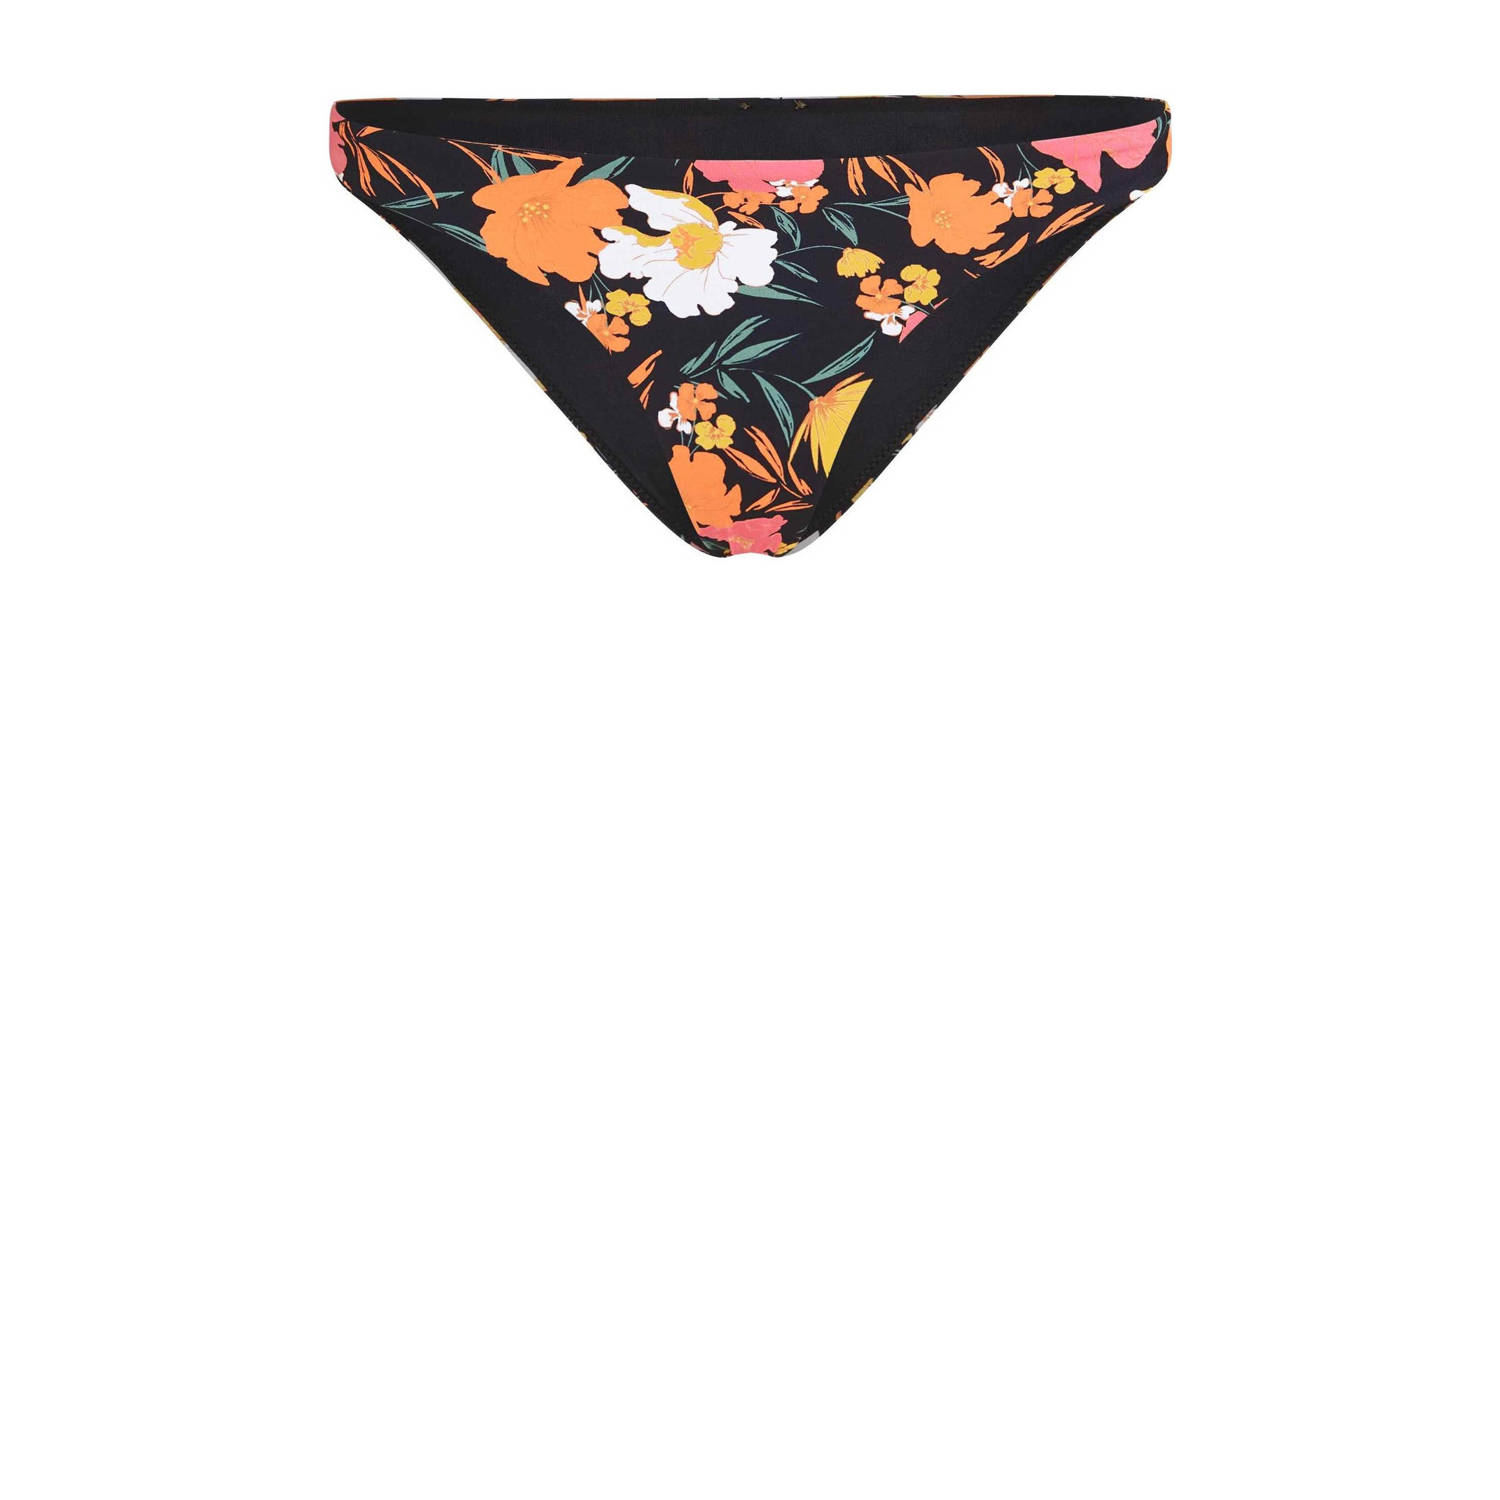 O'Neill brazilian bikinibroekje Skye zwart oranje roze